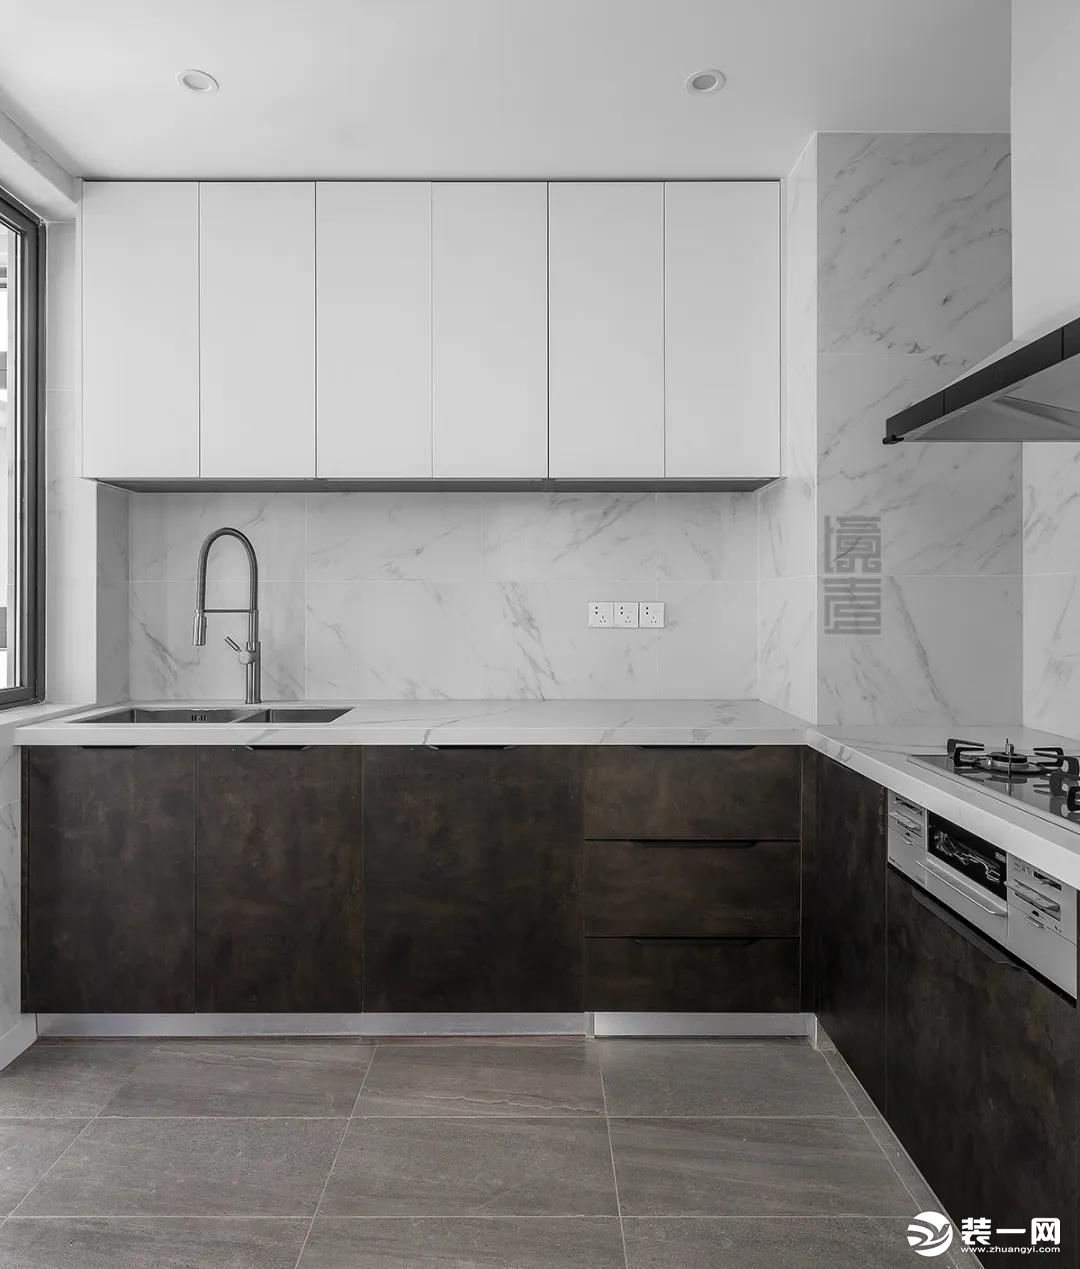 厨房地面以灰色的地砖，结合深灰色的橱柜，雅白的墙面，营造出一种简洁时尚的烹饪氛围感。